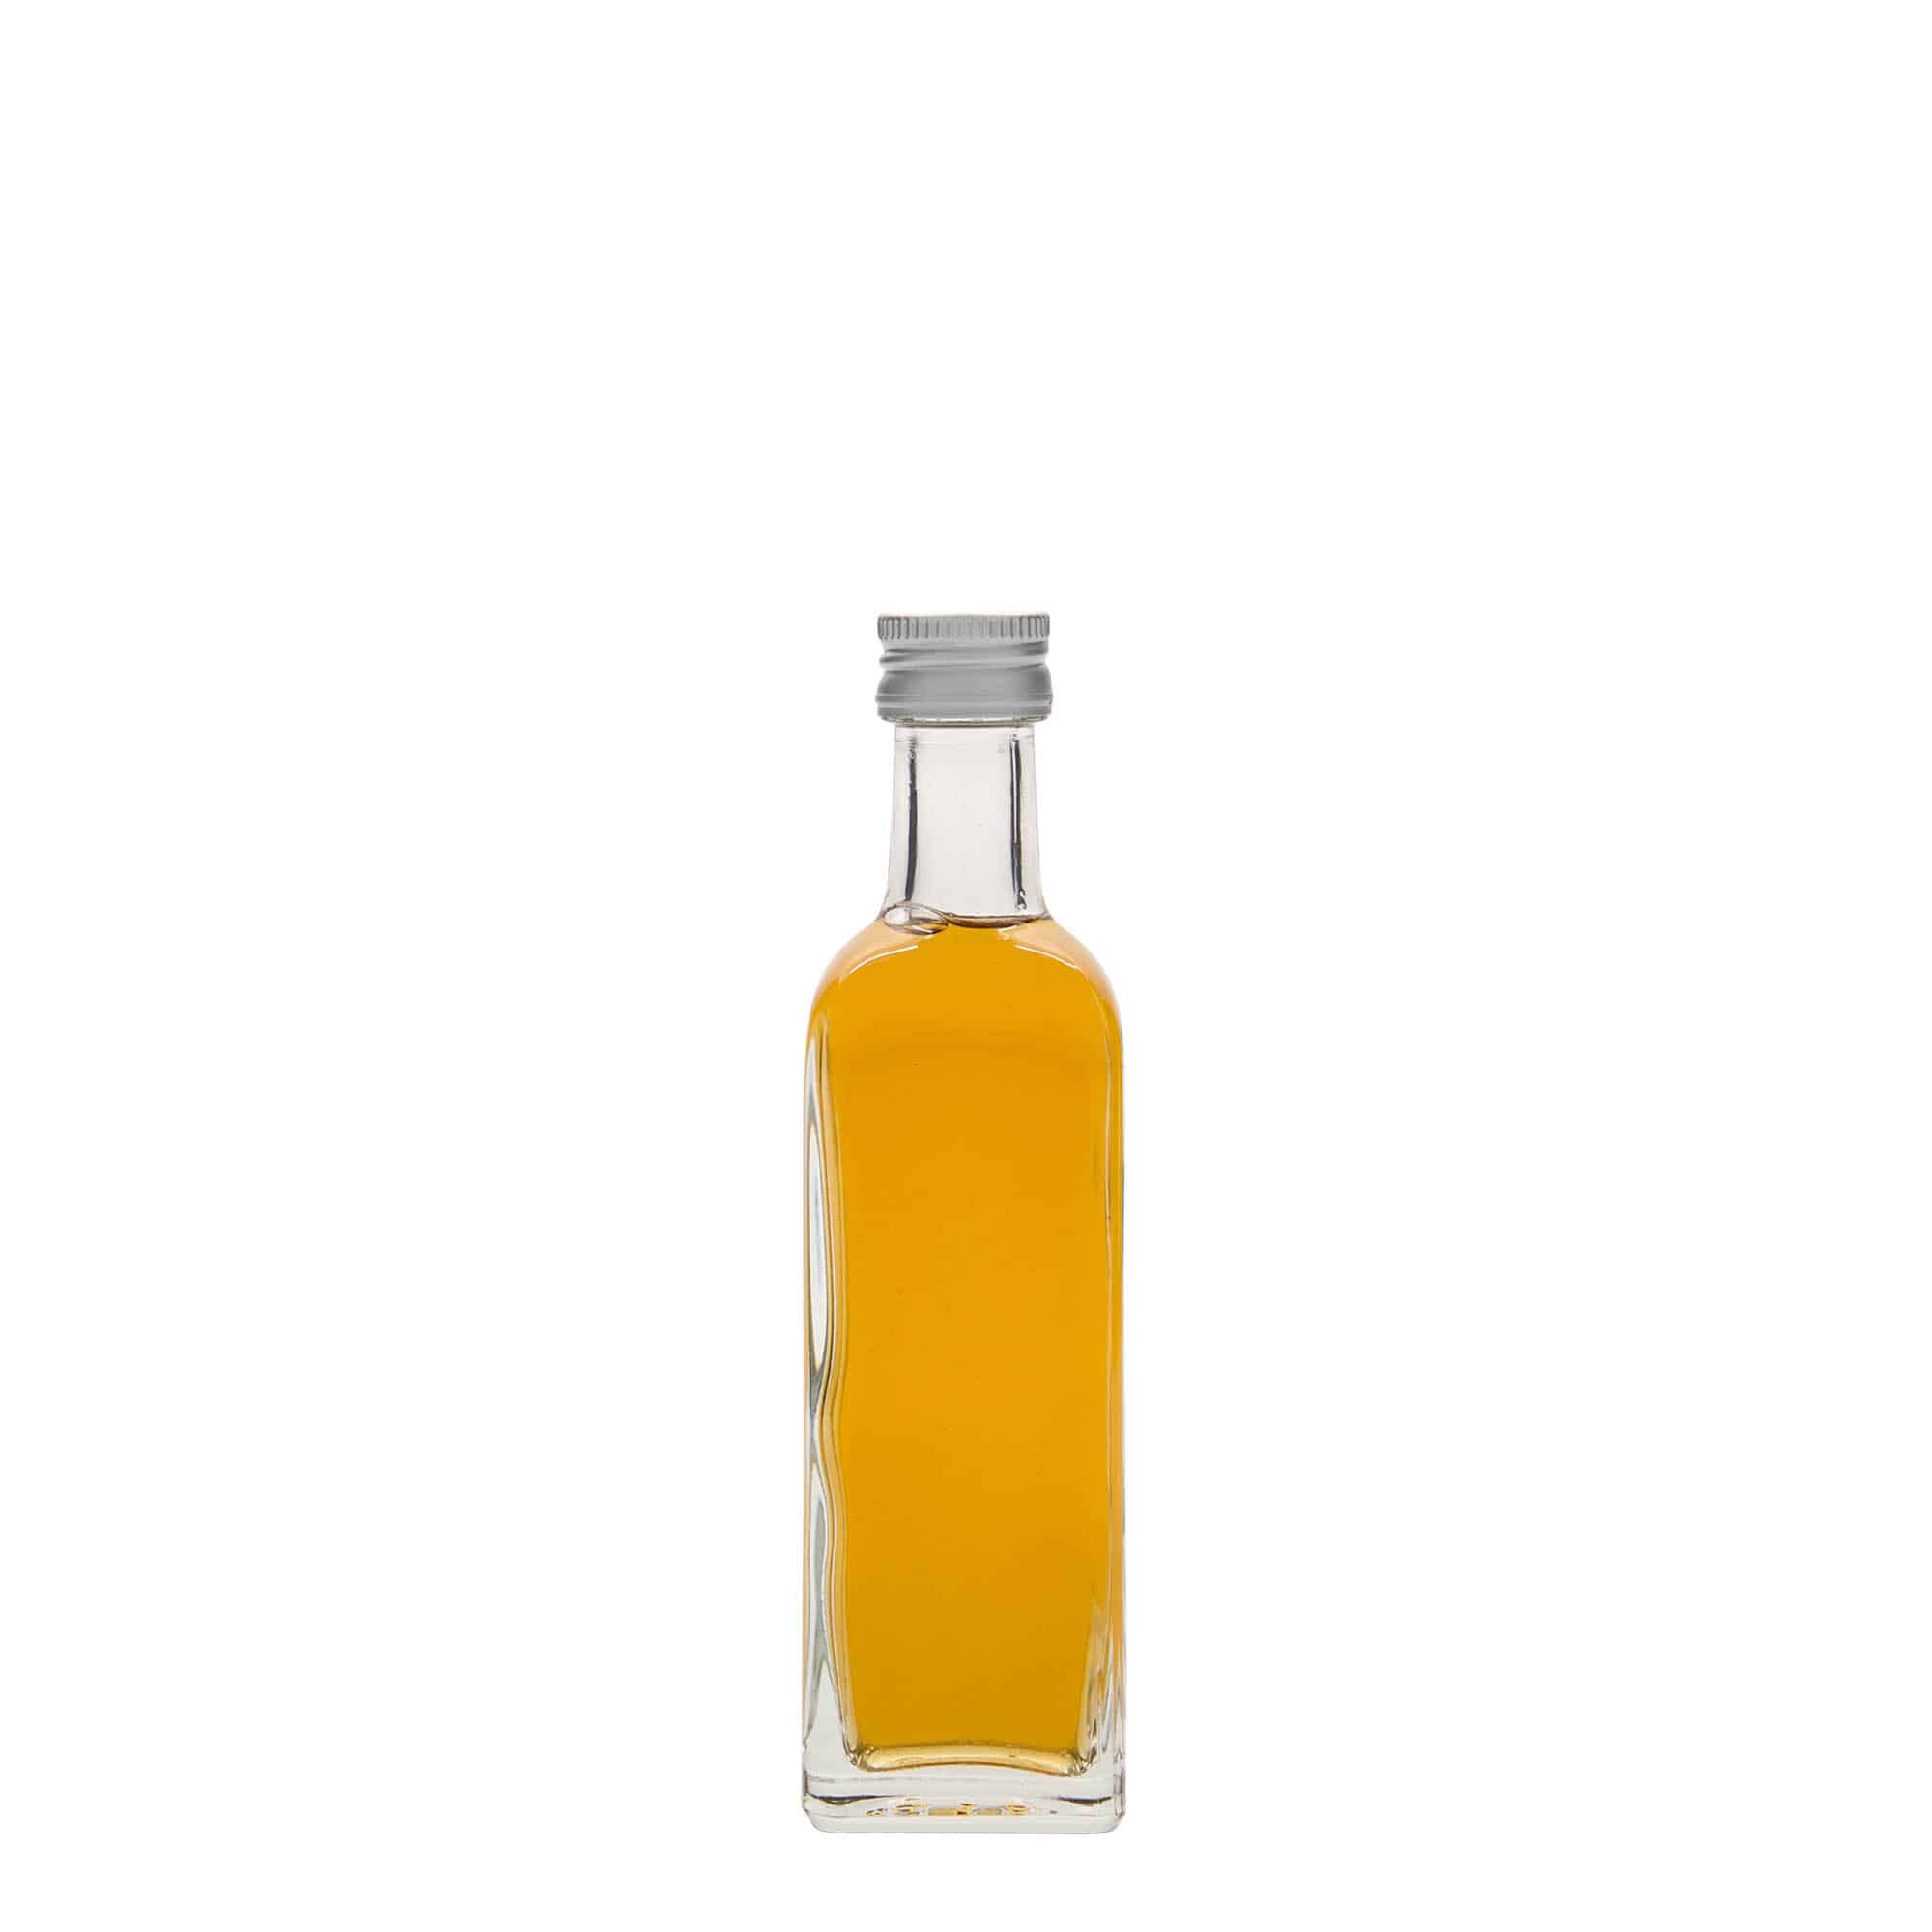 60 ml glasflaske 'Marasca', kvadratisk, åbning: PP 18